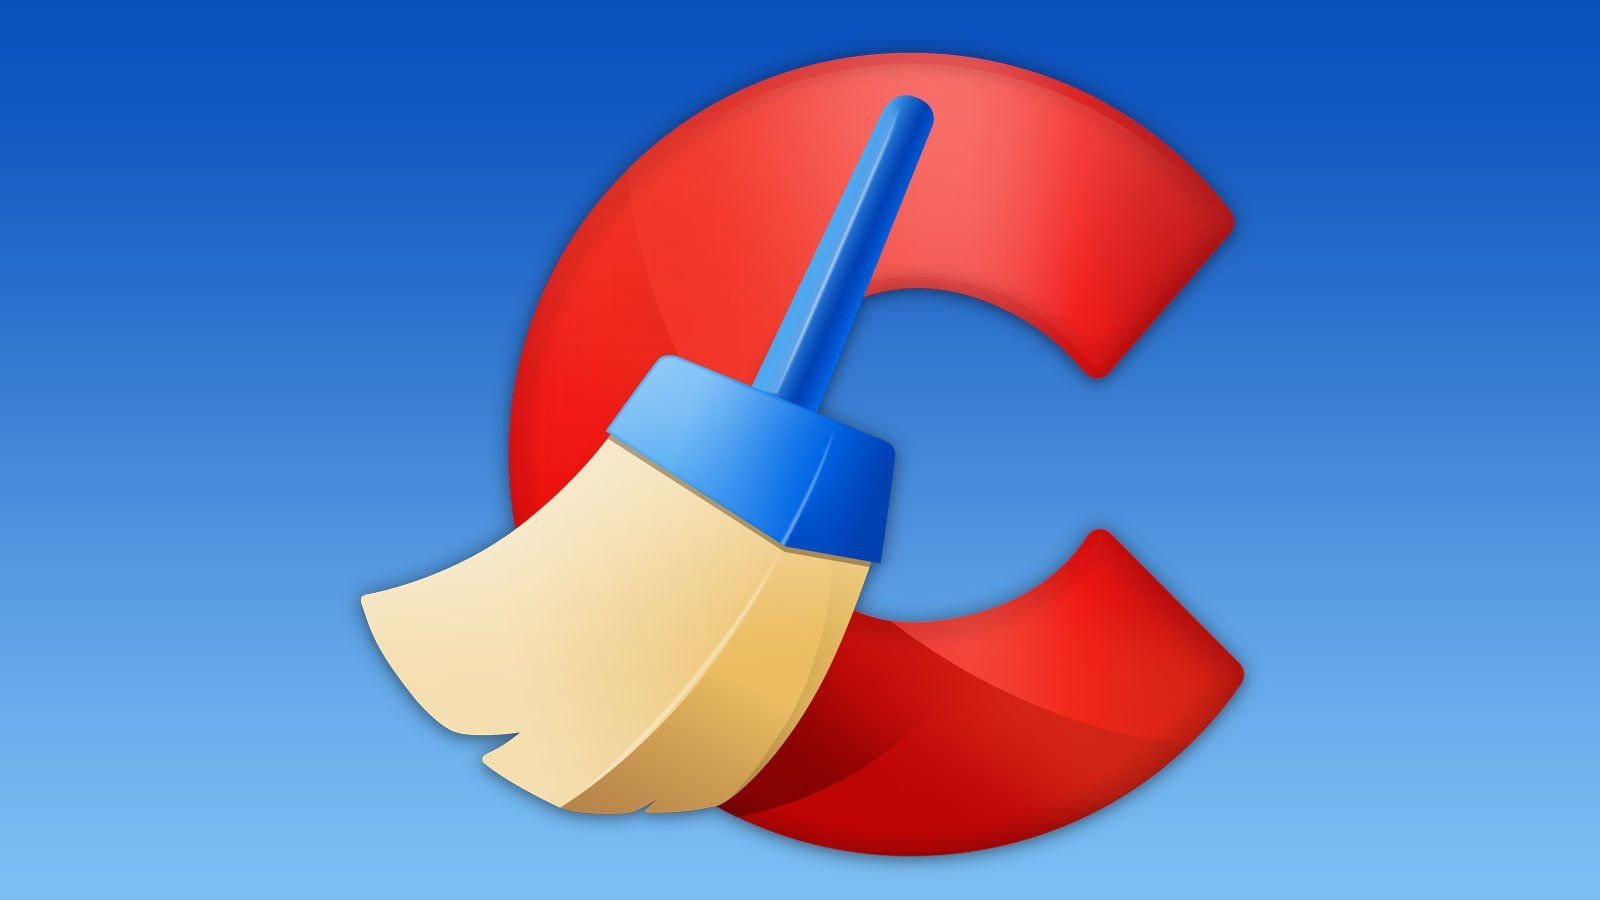 CCleaner là một phần mềm giúp dọn dẹp các tập tin trên máy tính